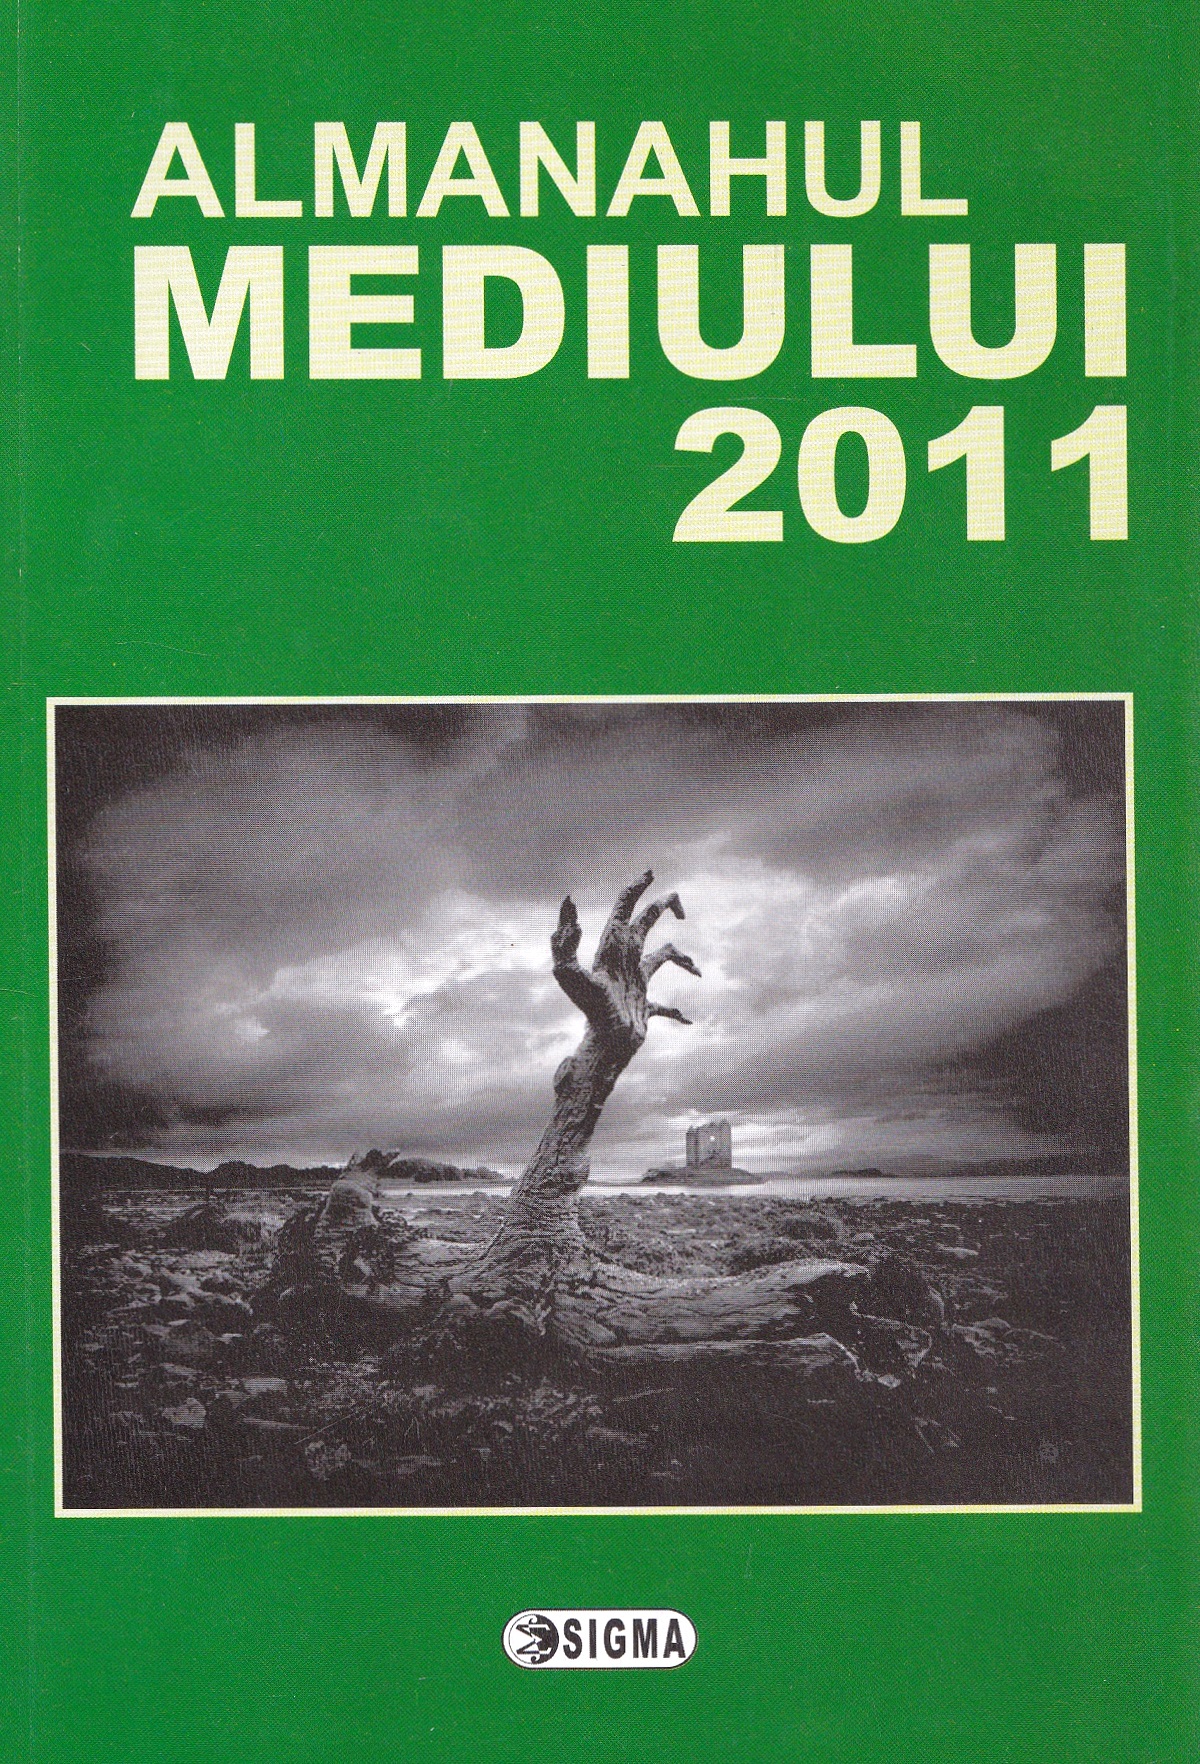 Almanahul mediului 2011